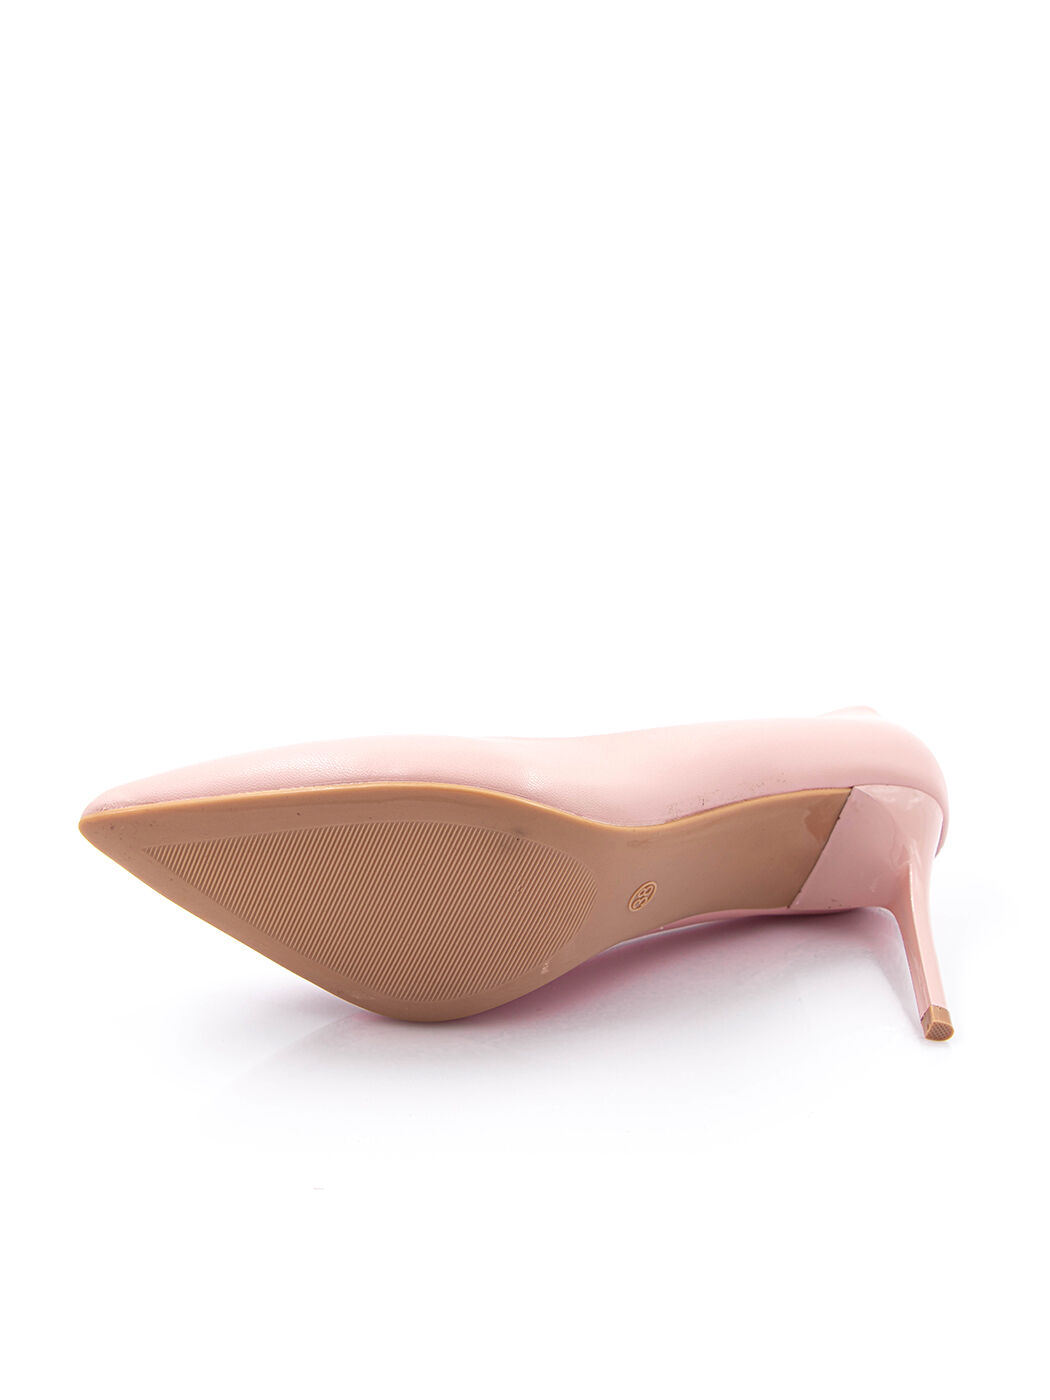 Туфли женские розовые экокожа каблук шпилька демисезон от производителя MM вид 2